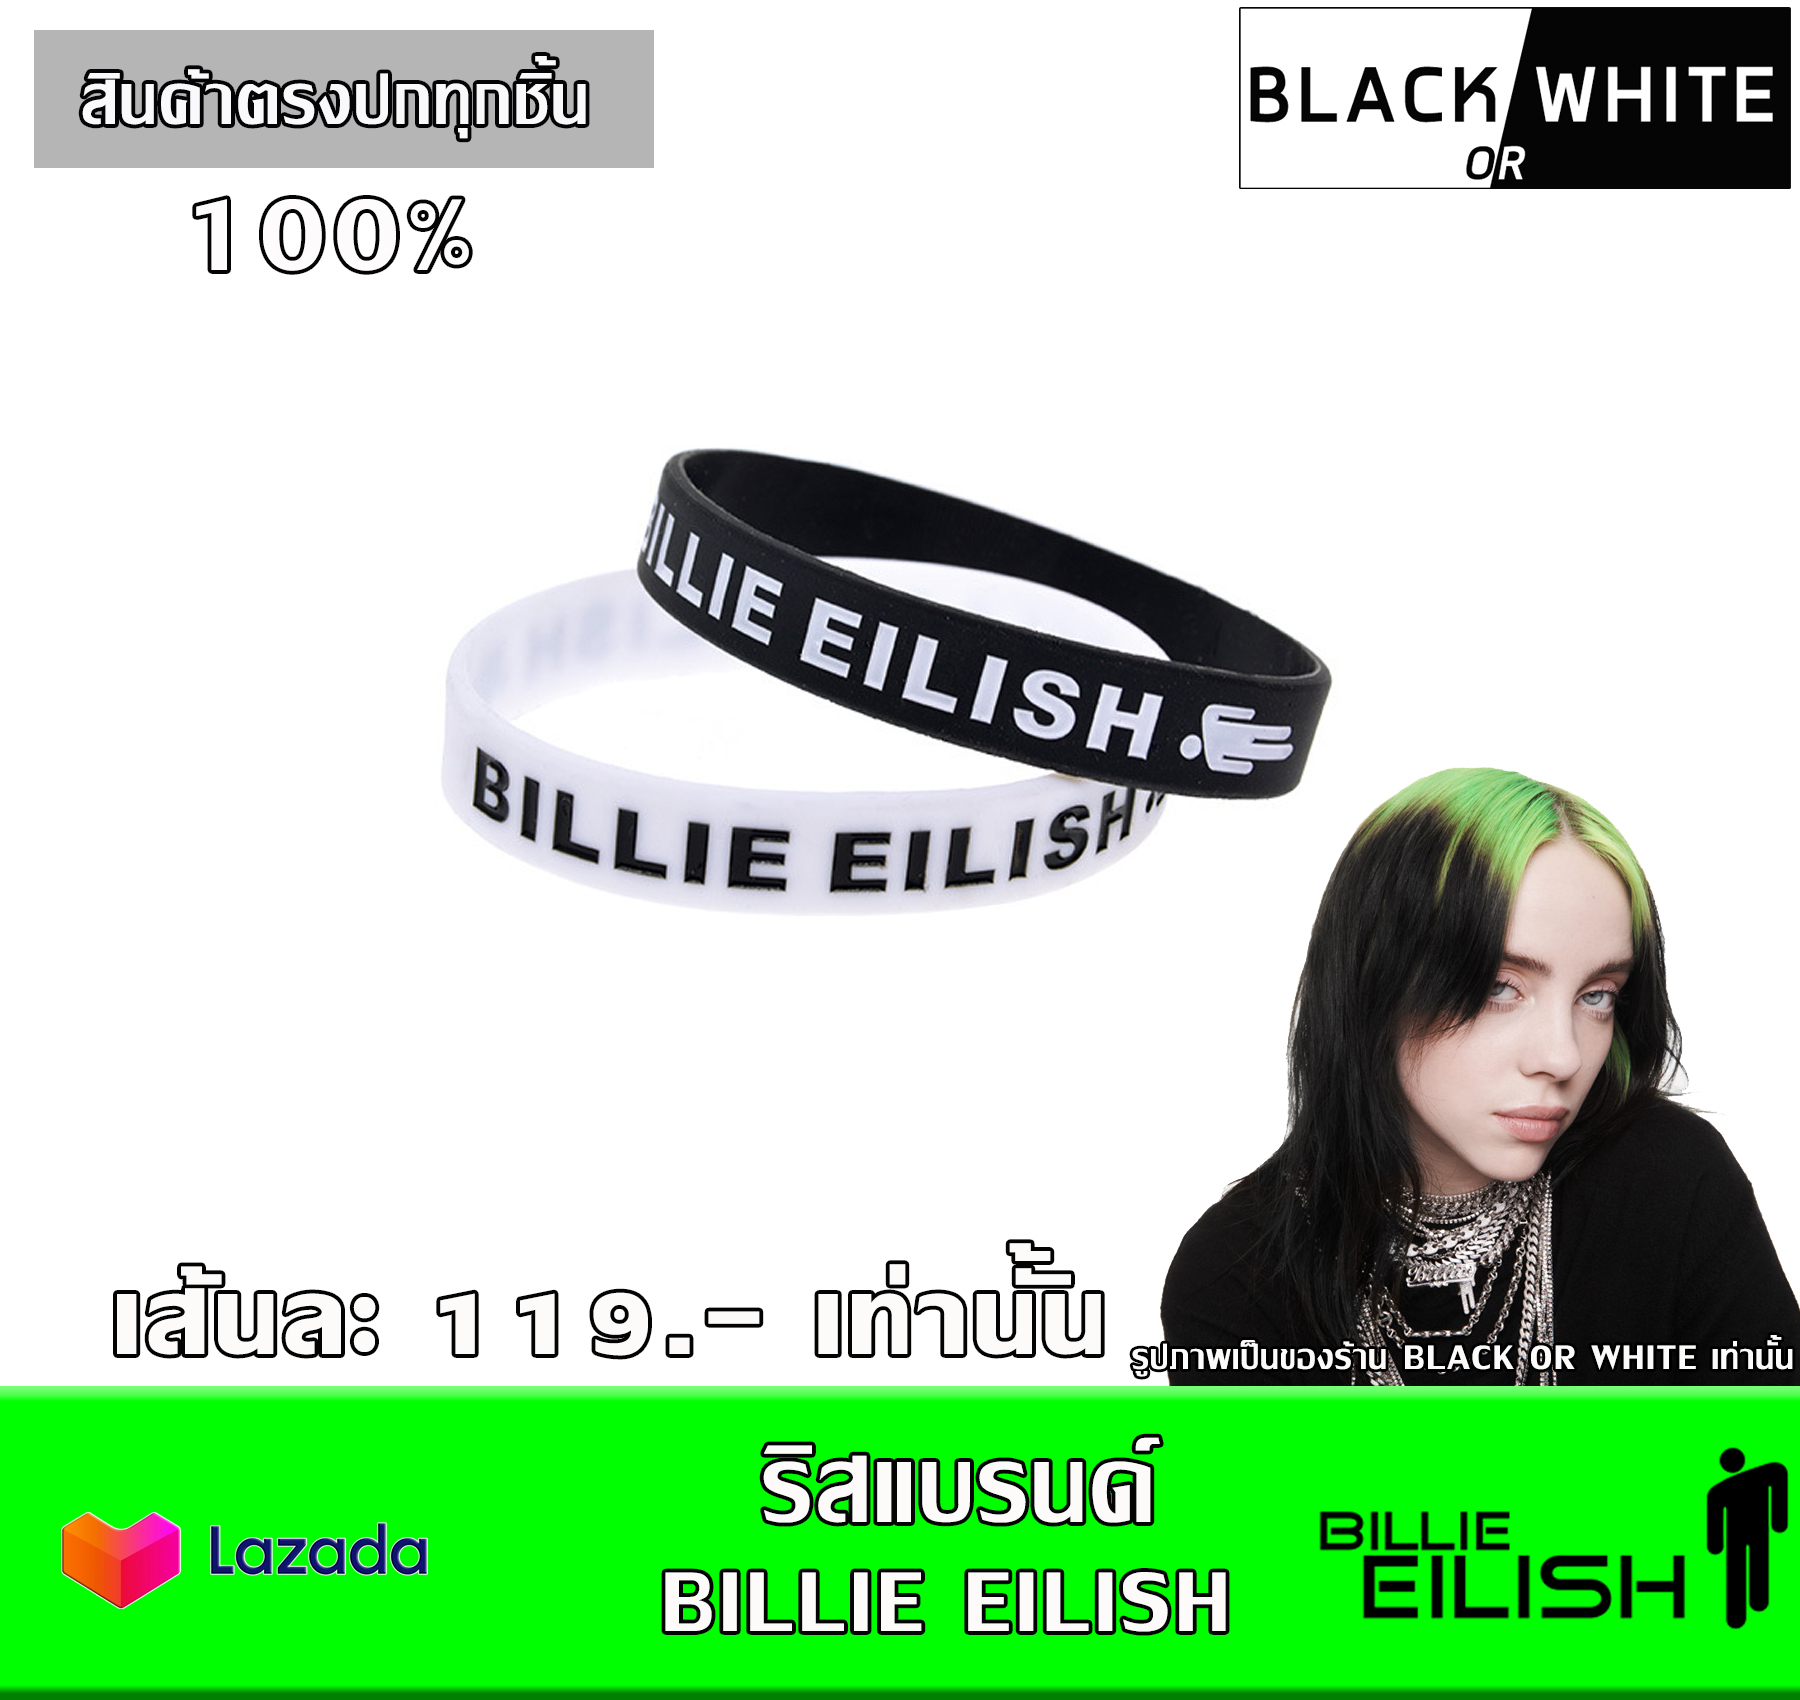 ฺBillie Eilish (บิลลี ไอลิช)  ริสแบนด์ wristband สายรัดข้อมือเท่ๆ กำไรข้อมือ วงดนตรีสากล วงดนตรีร็อค เมทัล ดนตรีป๊อบ  รับประกันสินค้าตรงปกทุกชิ้น